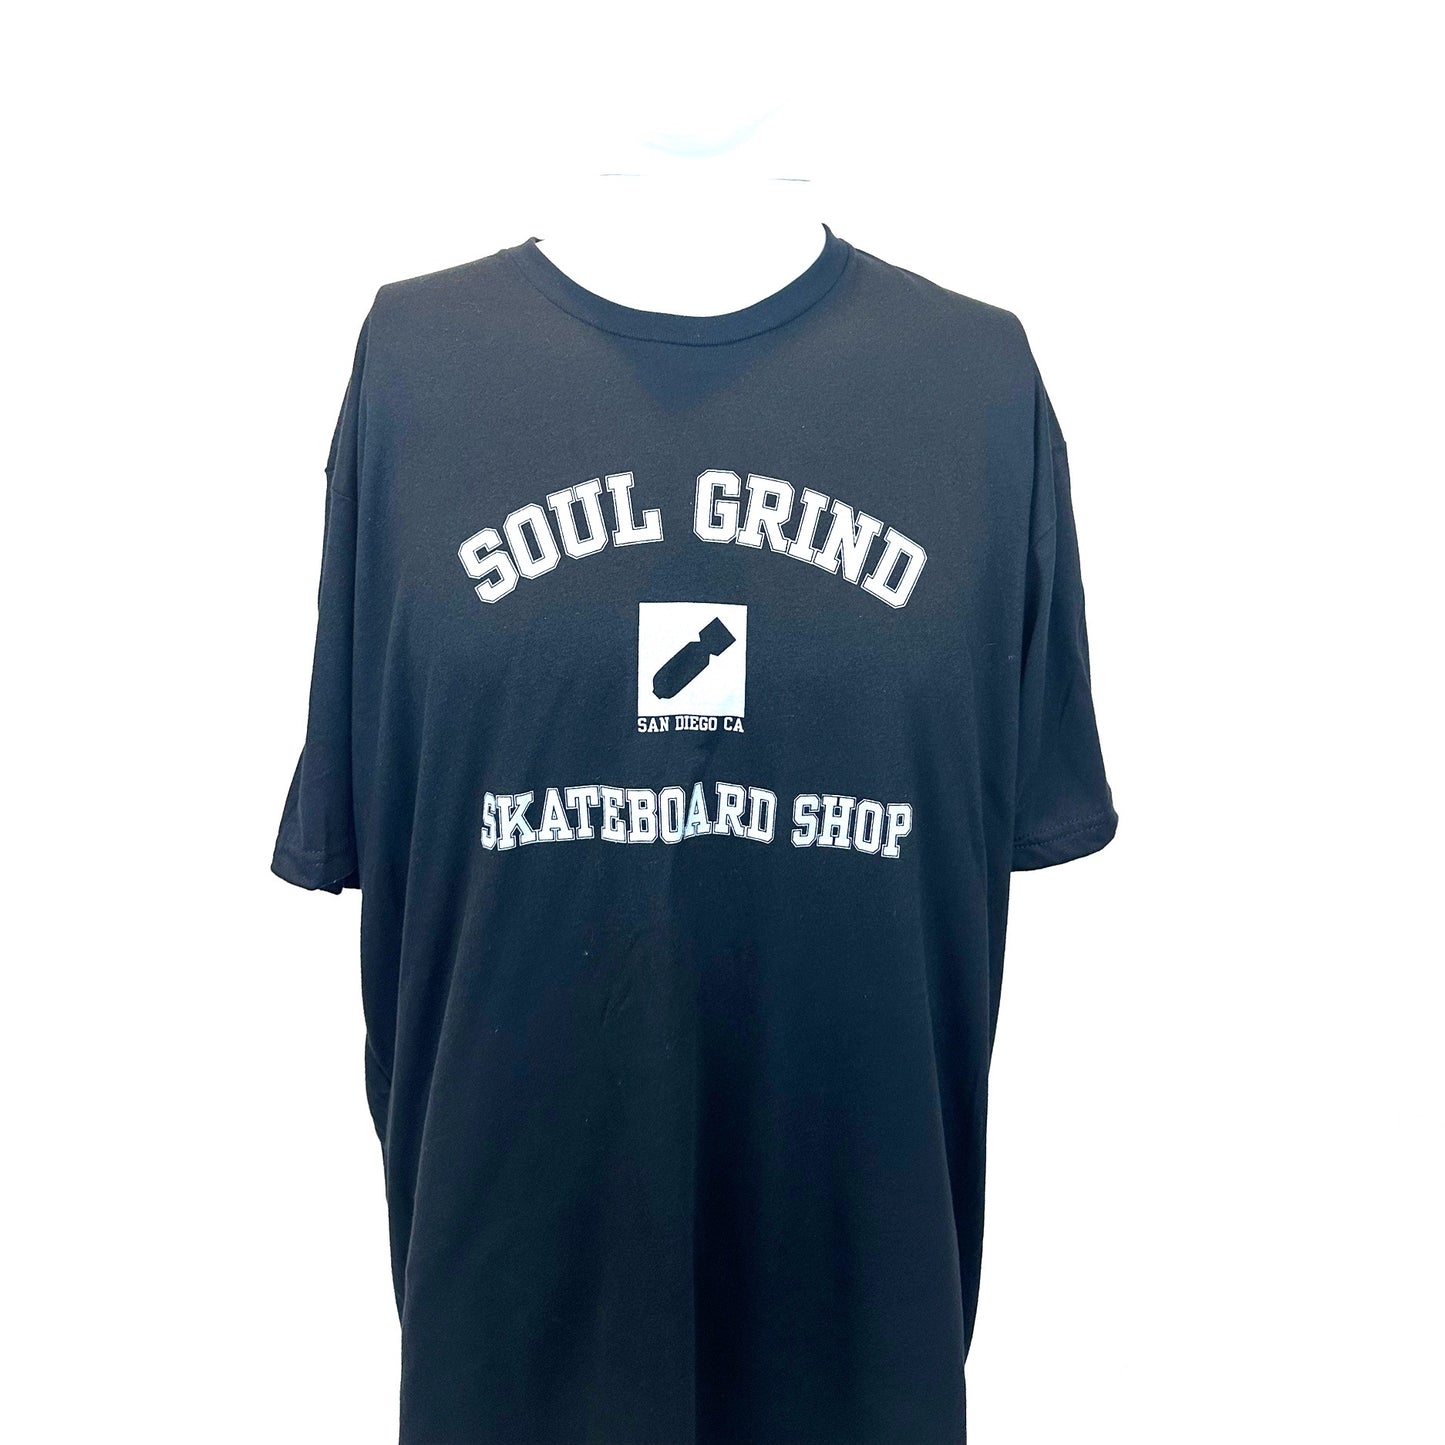 Soul Grind T-Shirt Large Black College